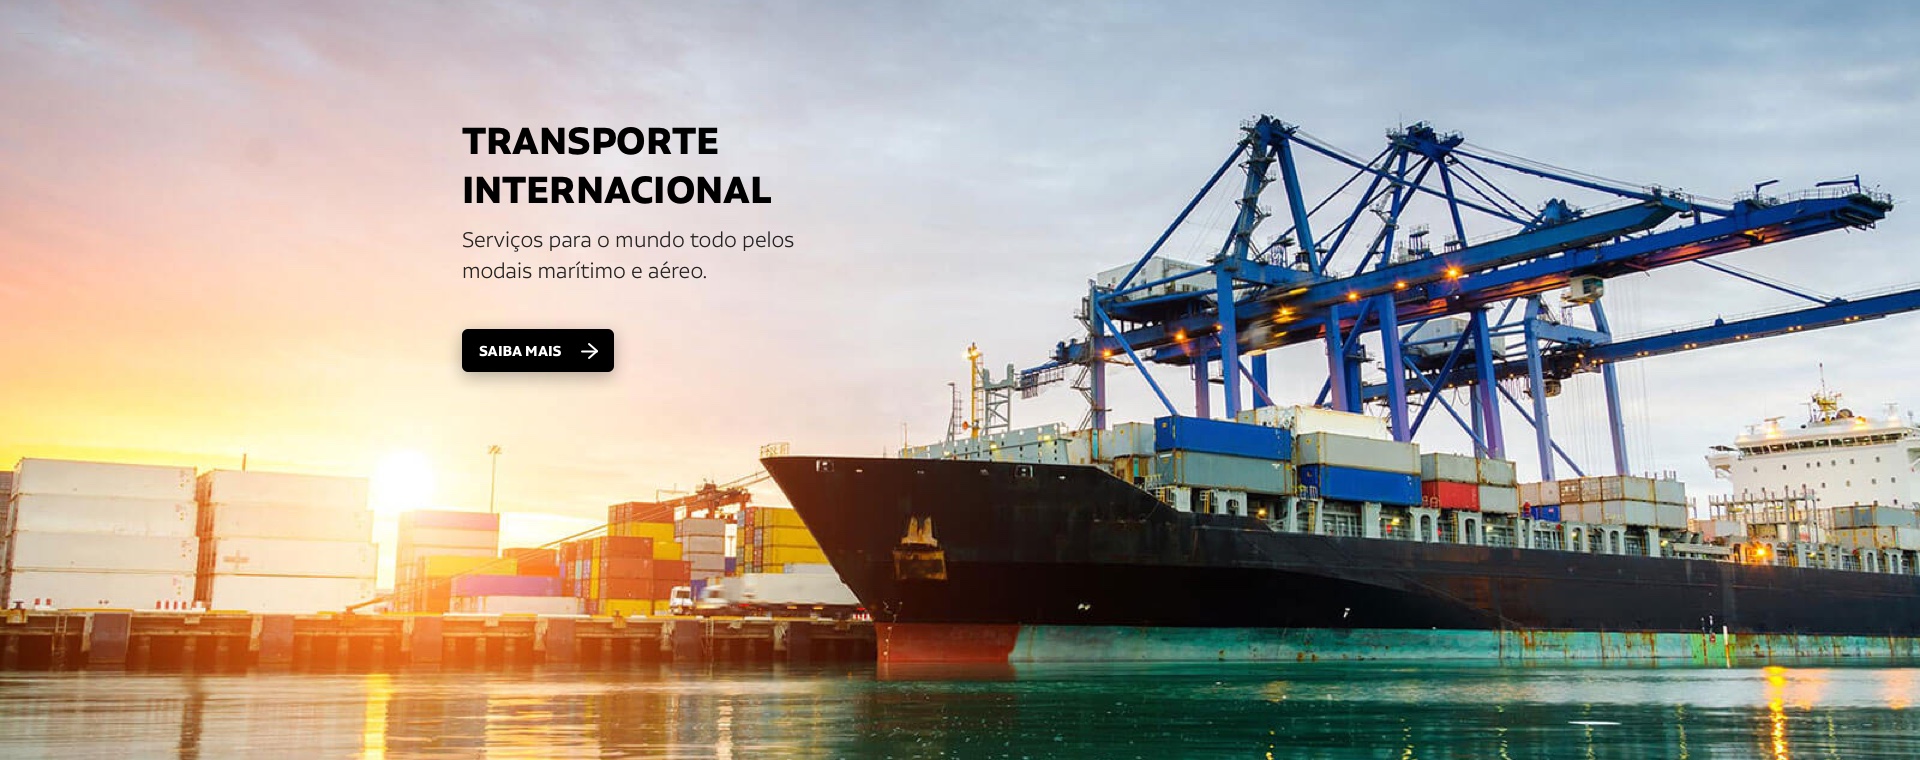 Transporte internacional: Serviços para o mundo todo pelos modais marítimo e aéreo